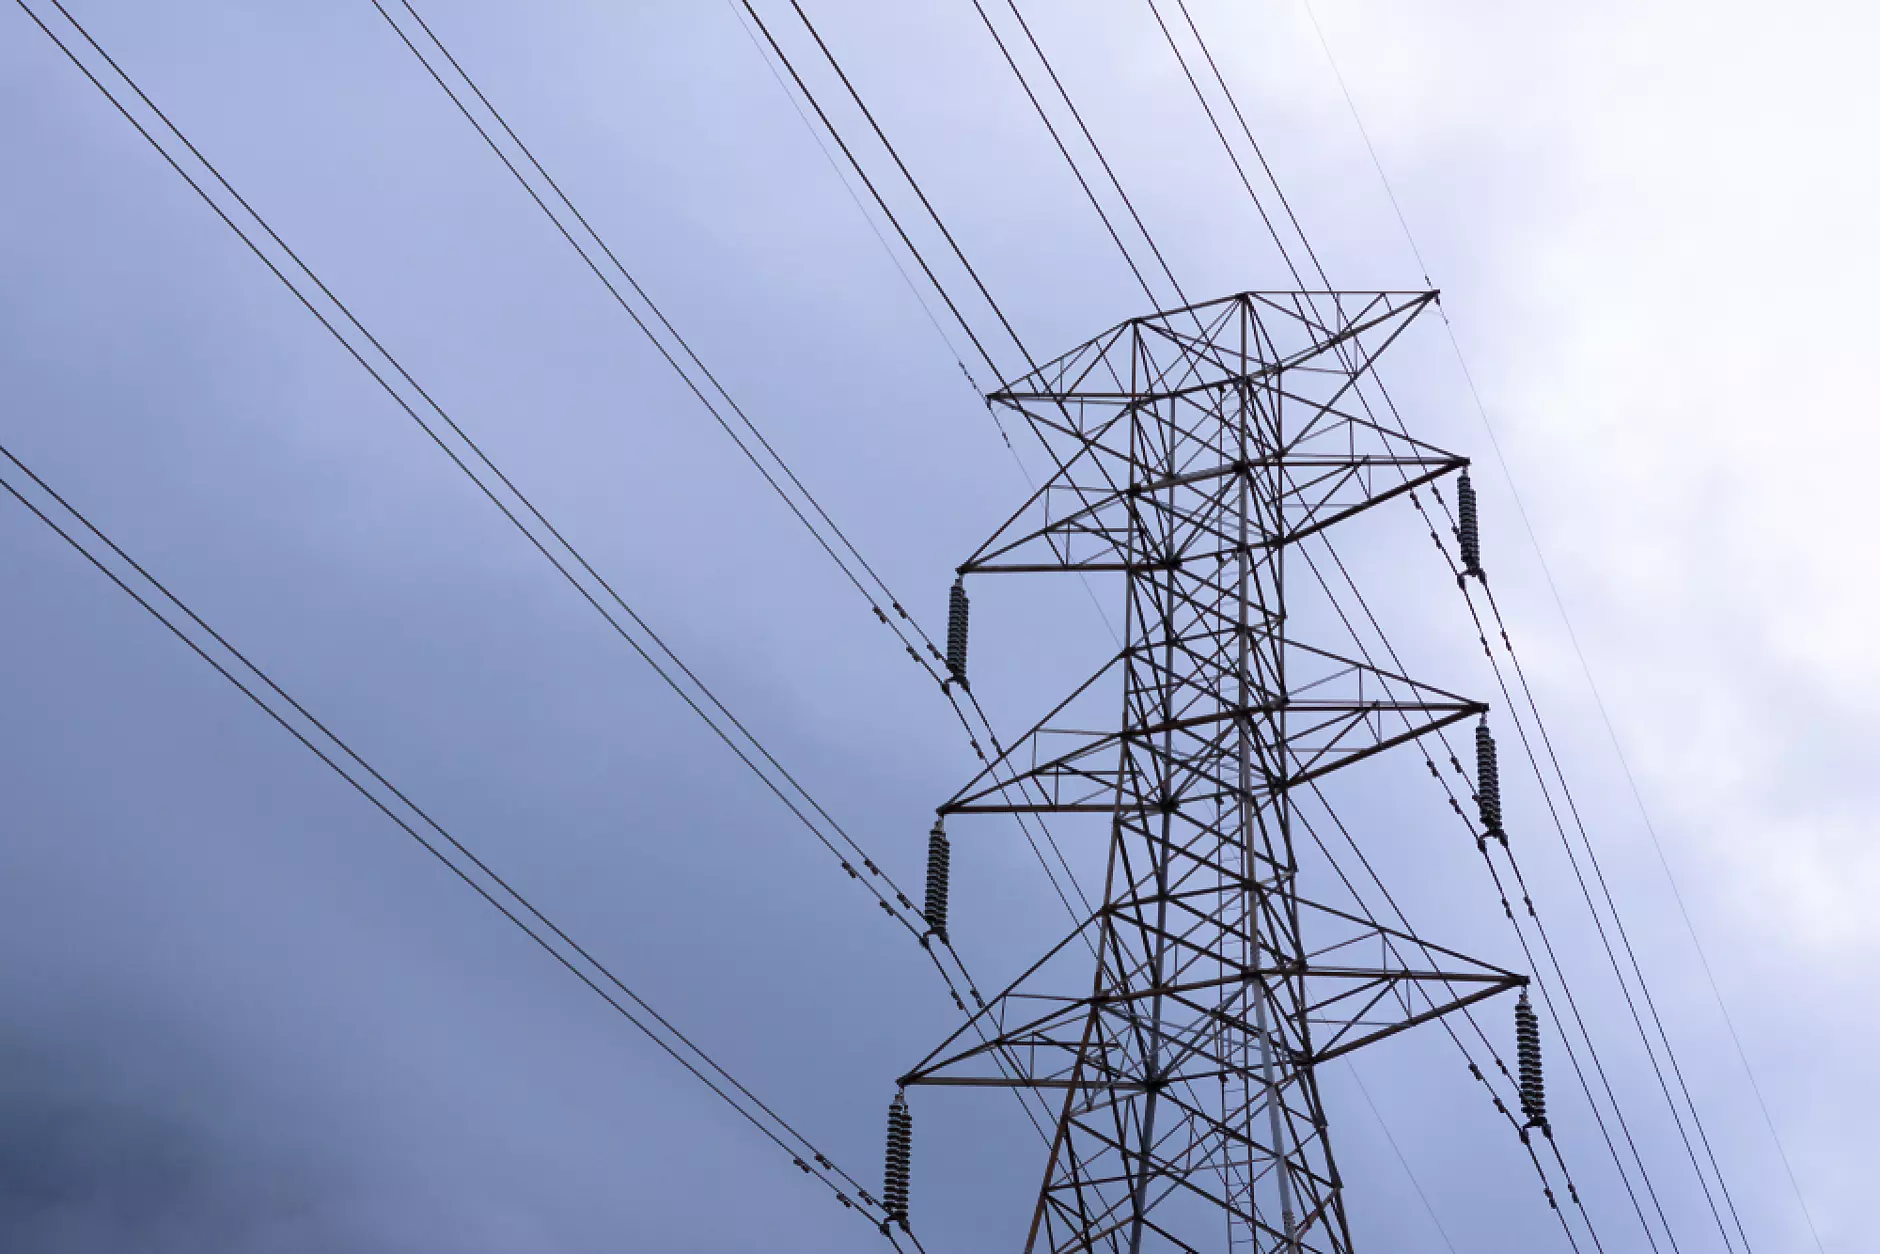  Няма да има предложение за двойна тарифа на тока за битовите потребители